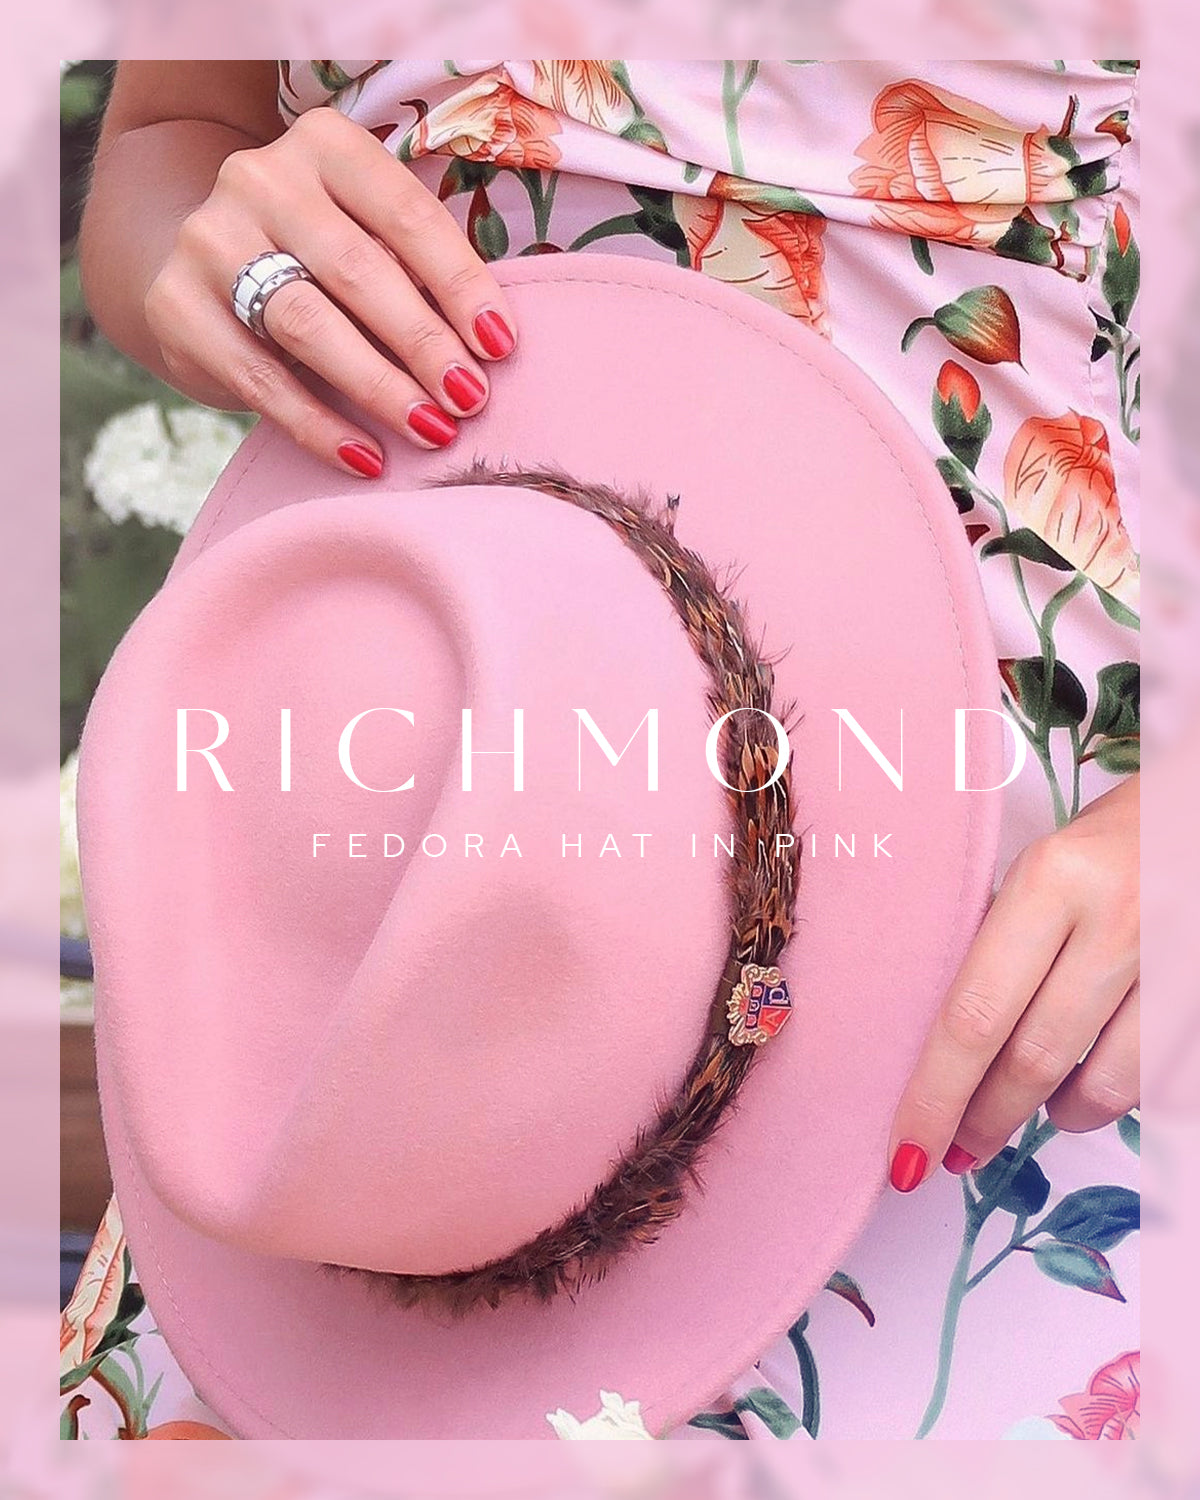 Richmond Ladies Fedora In Pink